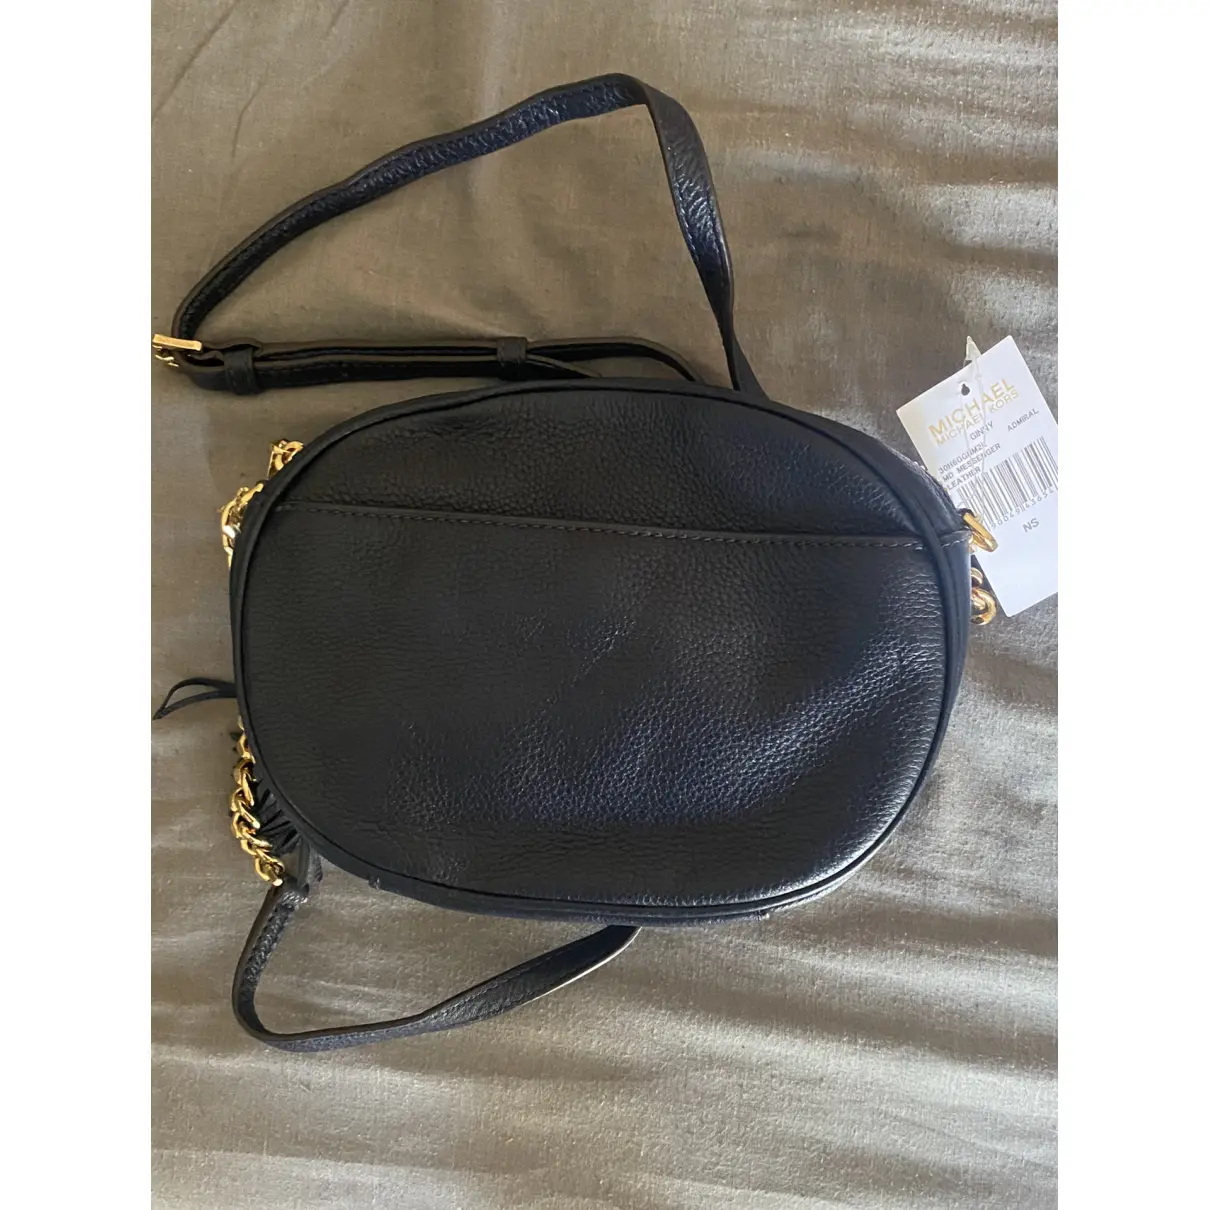 Cindy leather handbag Michael Kors